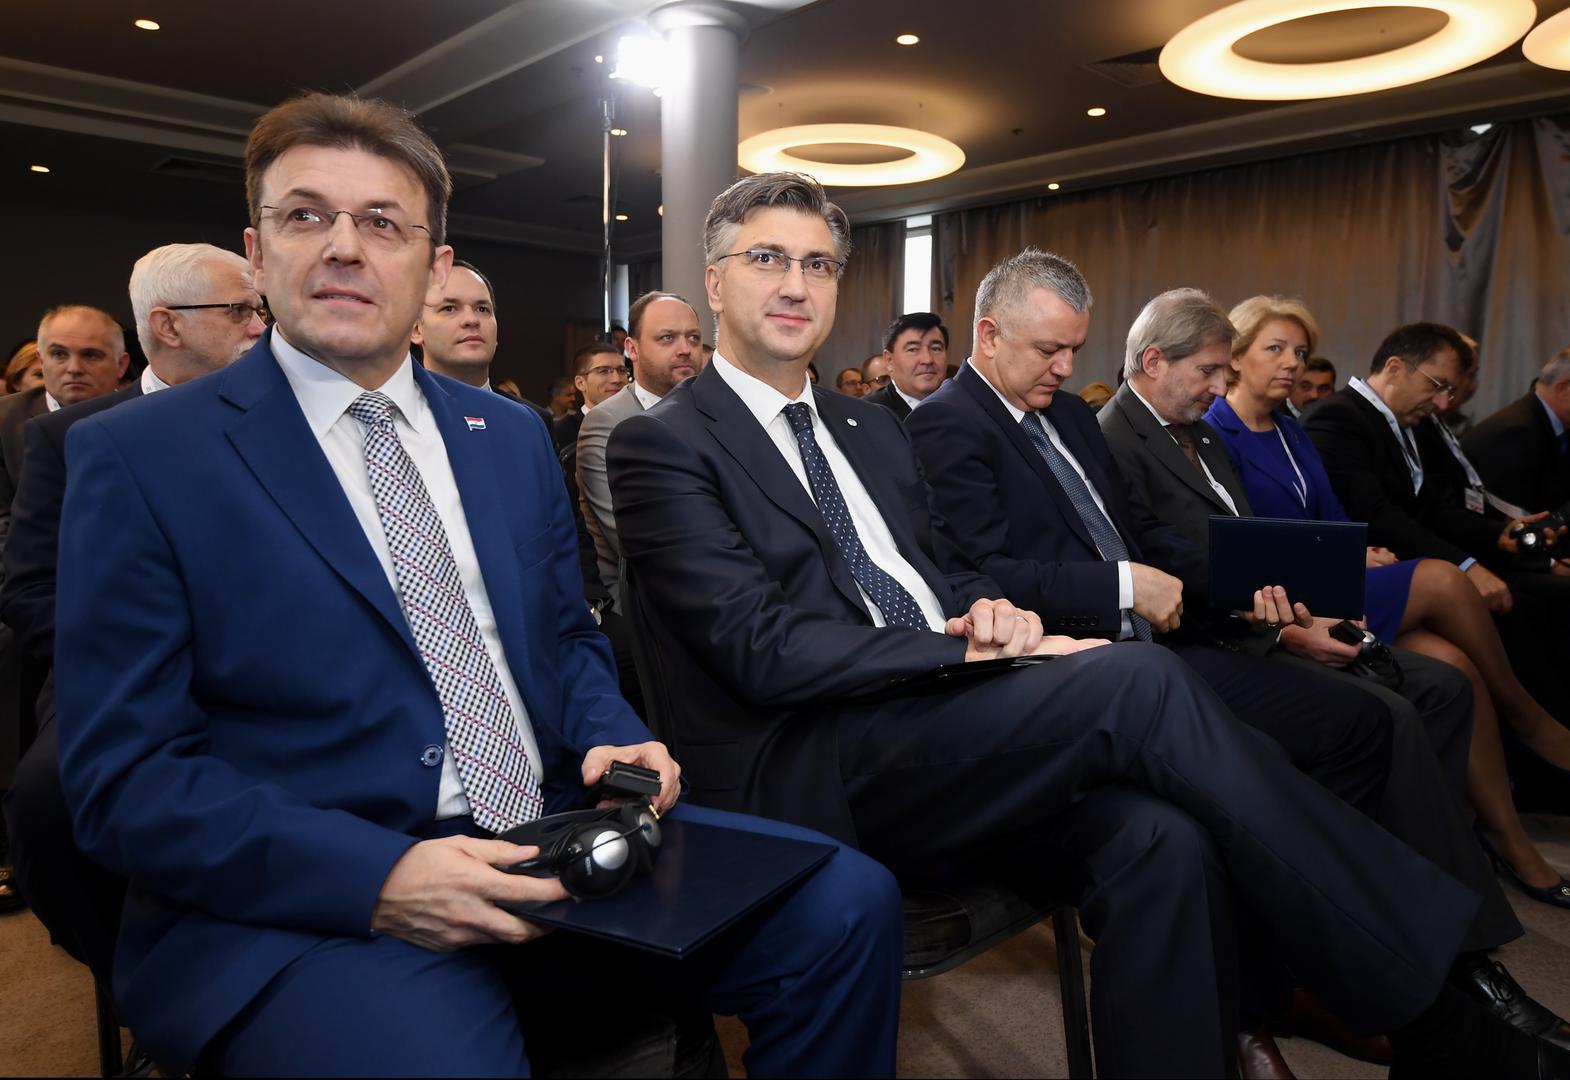 Luku Burilovića  zabrinjava što Hrvatska u istraživanje ulaže manje od prosjeka EU